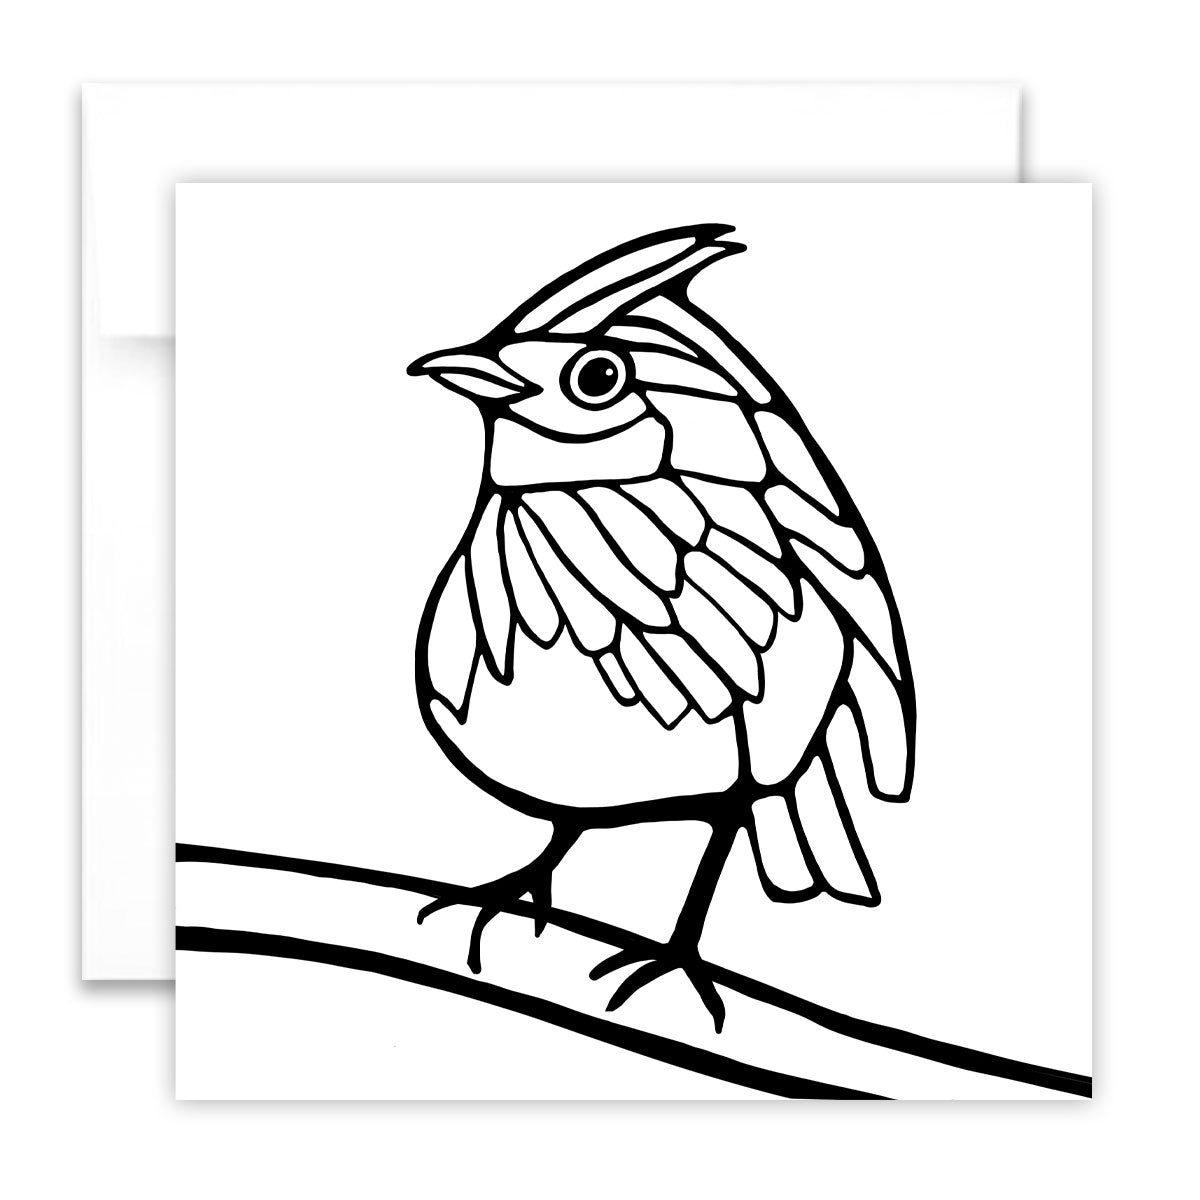 Colouring Greeting Card - European Robin